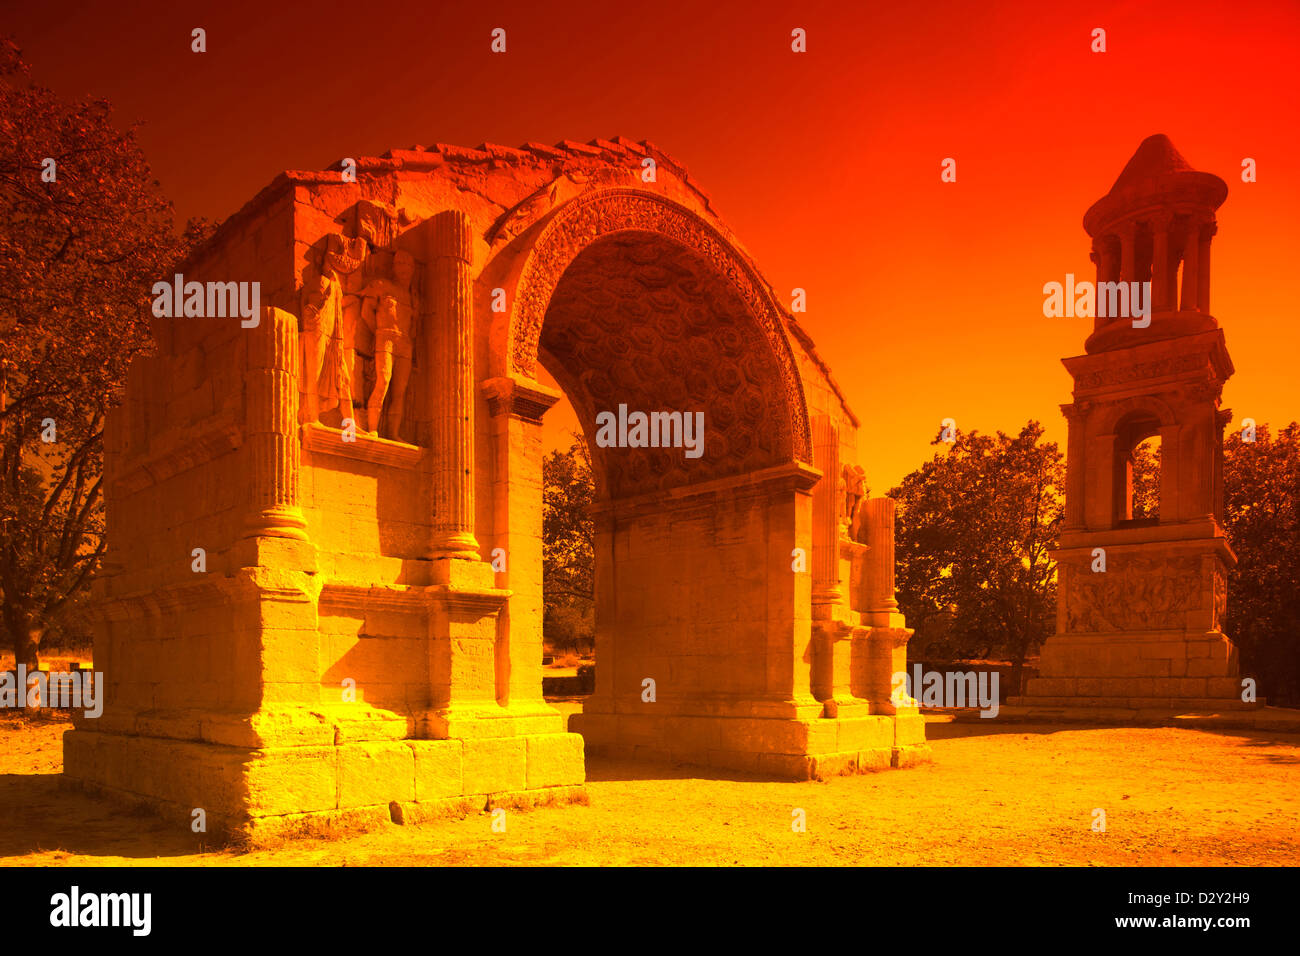 ZENOTAPH arc romain et ruines de GLANUM SAINT RÉMY DE PROVENCE DU RHÔNE FRANCE Buch鋨es Banque D'Images